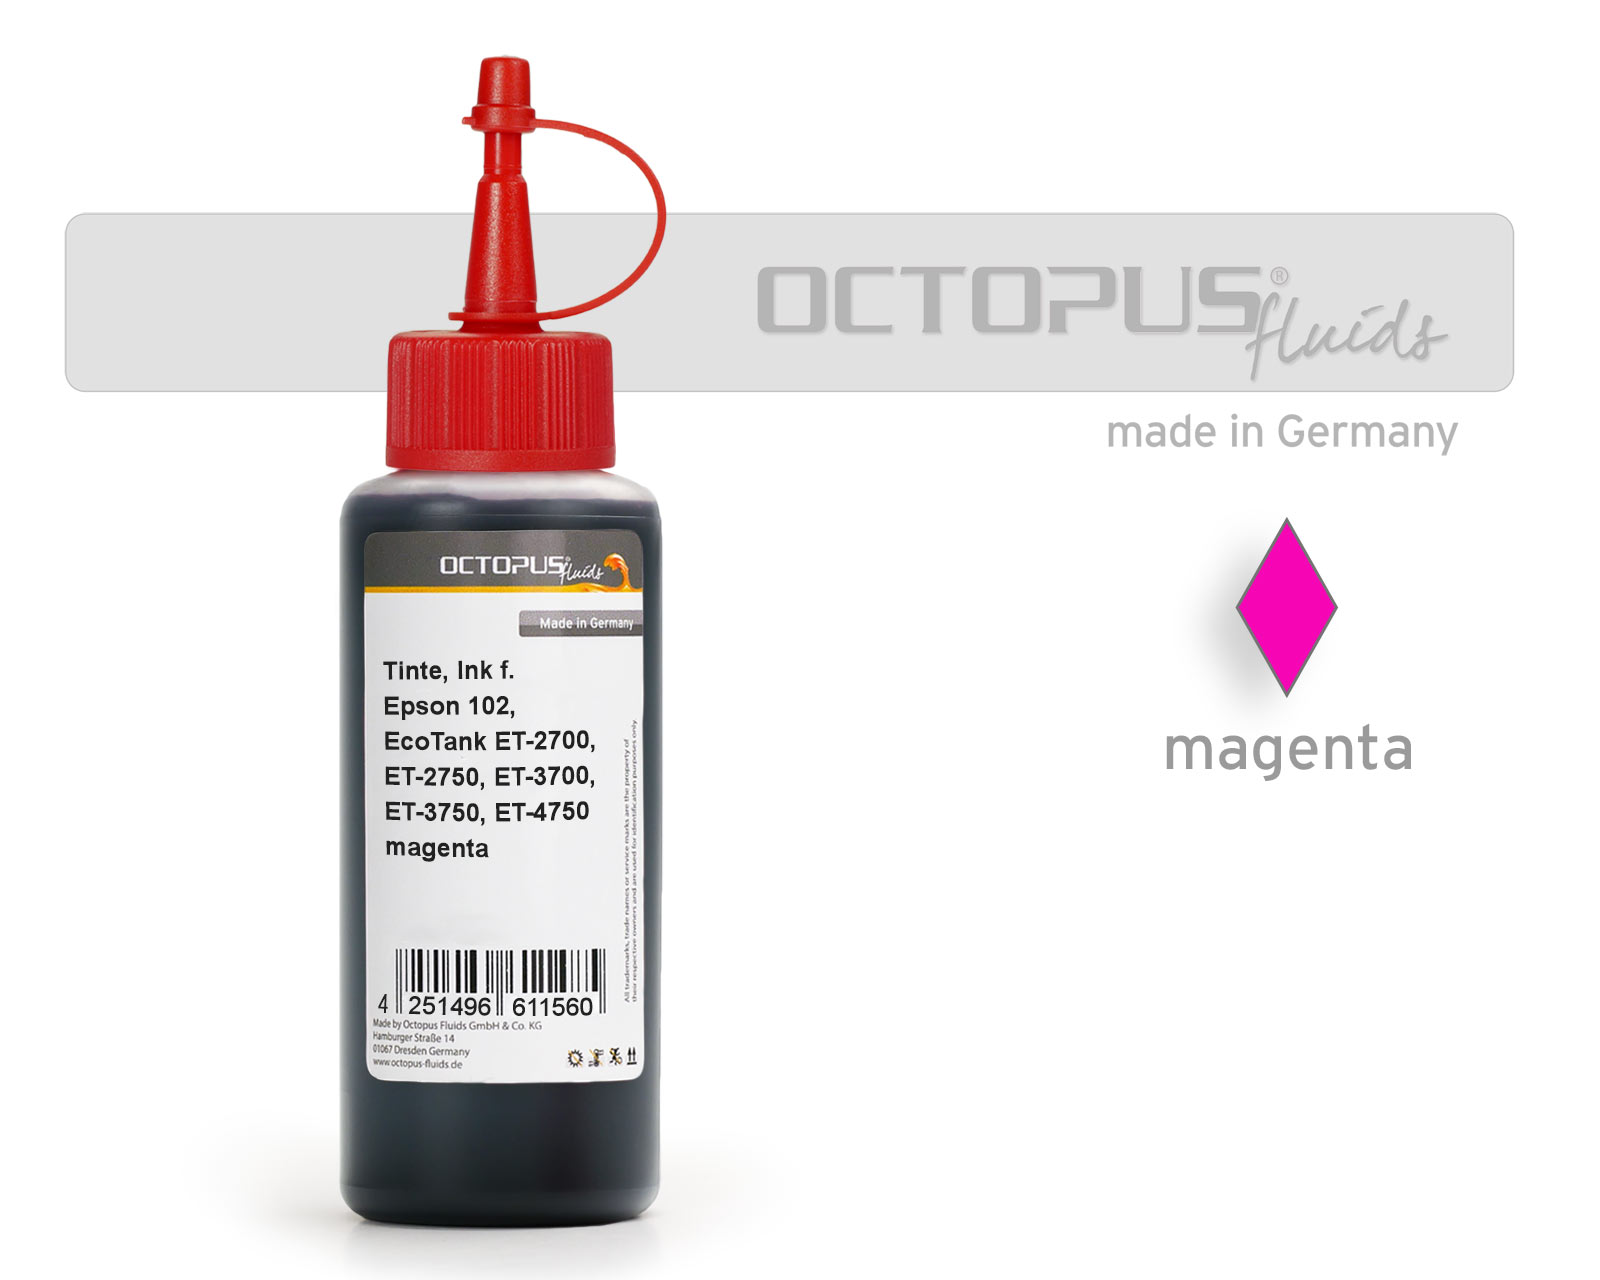 Refill ink for Epson 102, EcoTank ET-2700, ET-2750, ET-3700, ET-3750, ET-4750 magenta